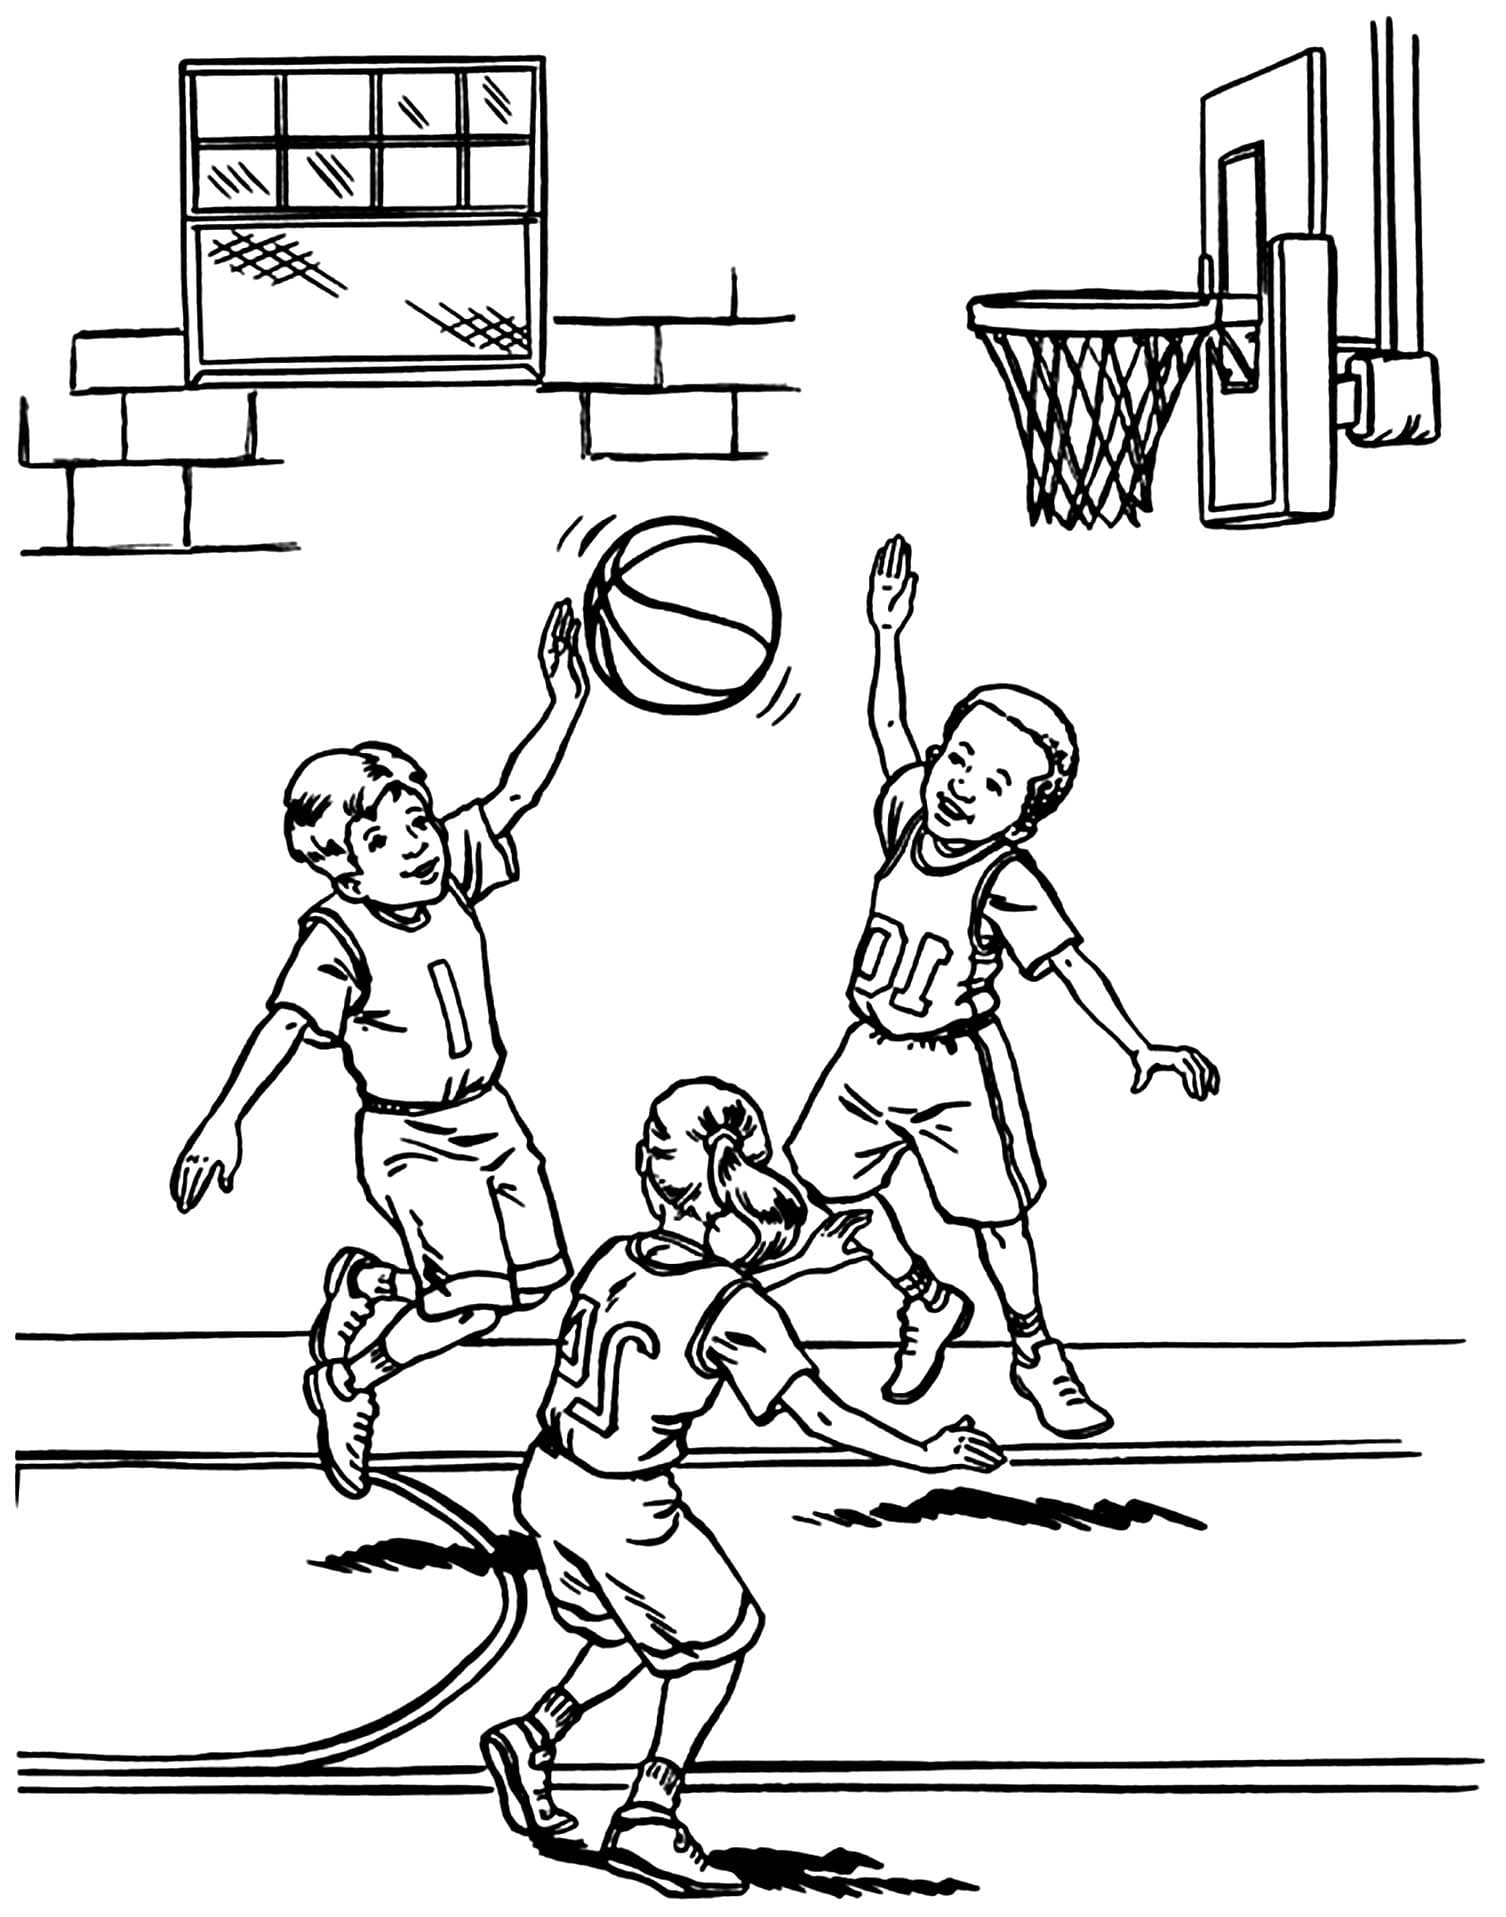 The Kids Playing Basketball